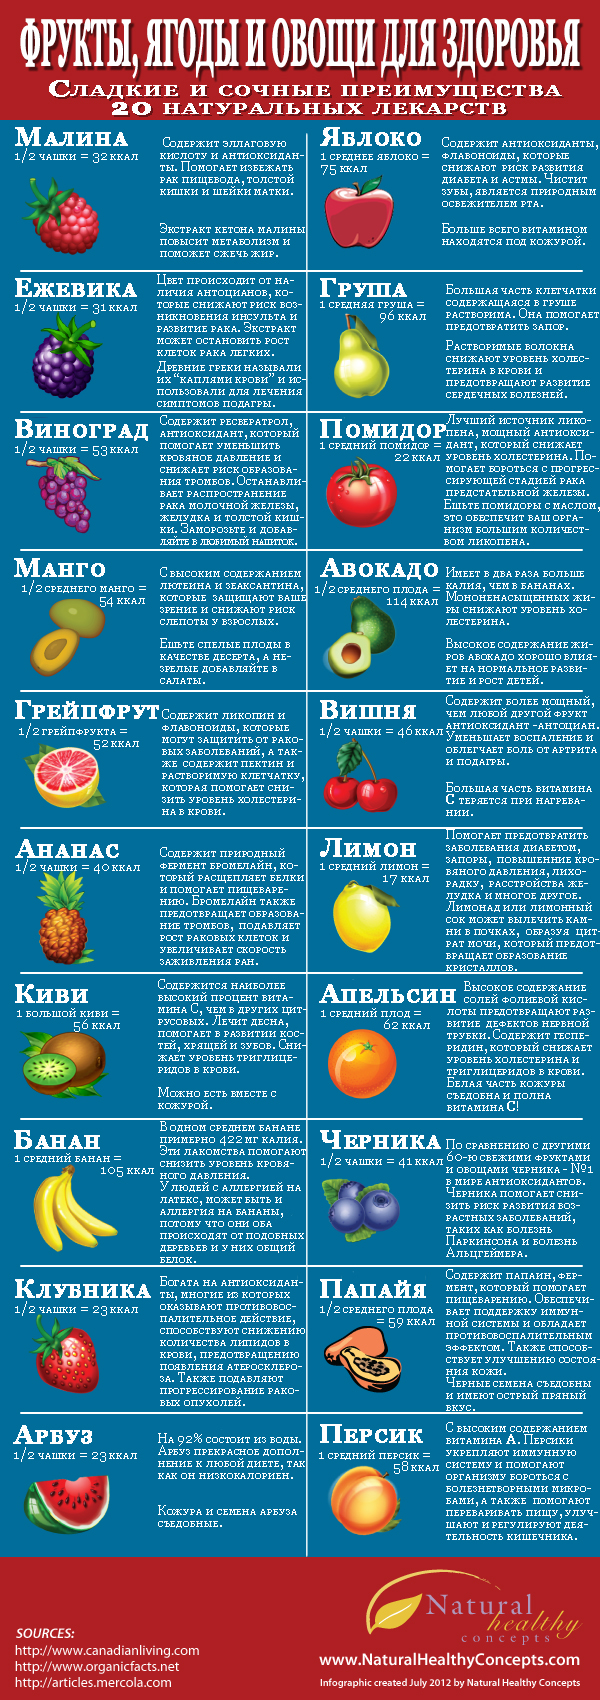 Польза ягод и фруктов